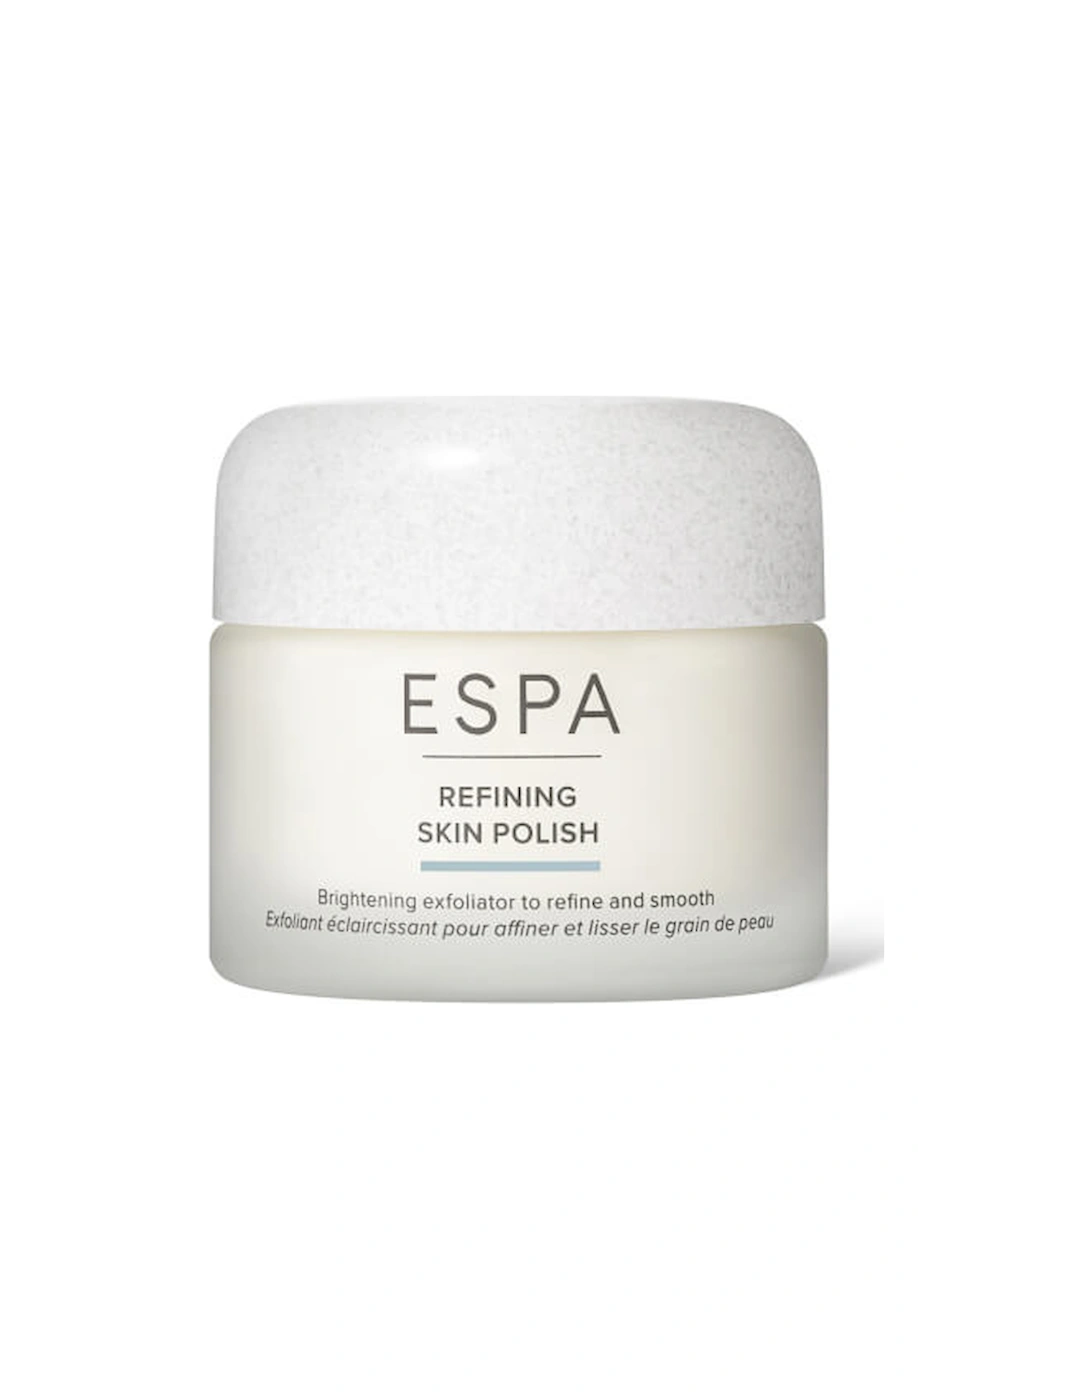 Refining Skin Polish 55ml - ESPA, 2 of 1